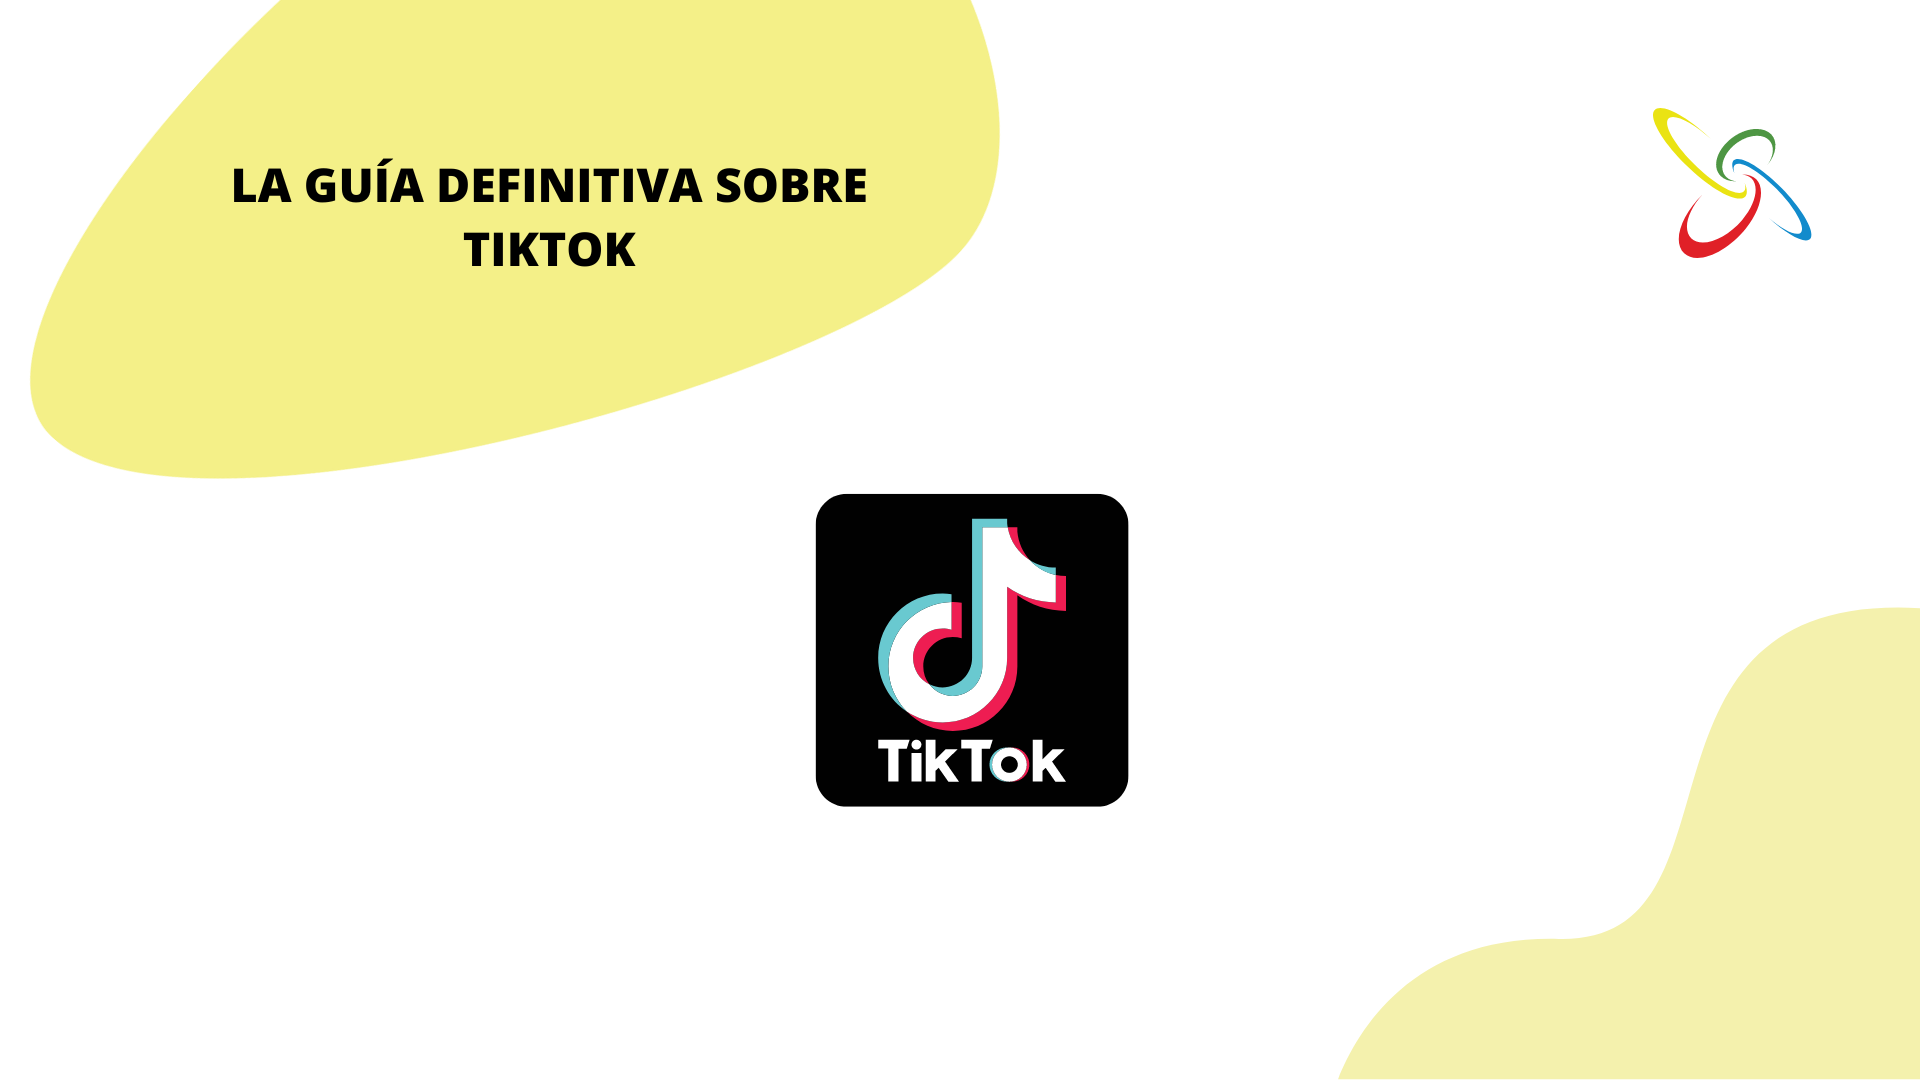 La guía definitiva sobre TikTok